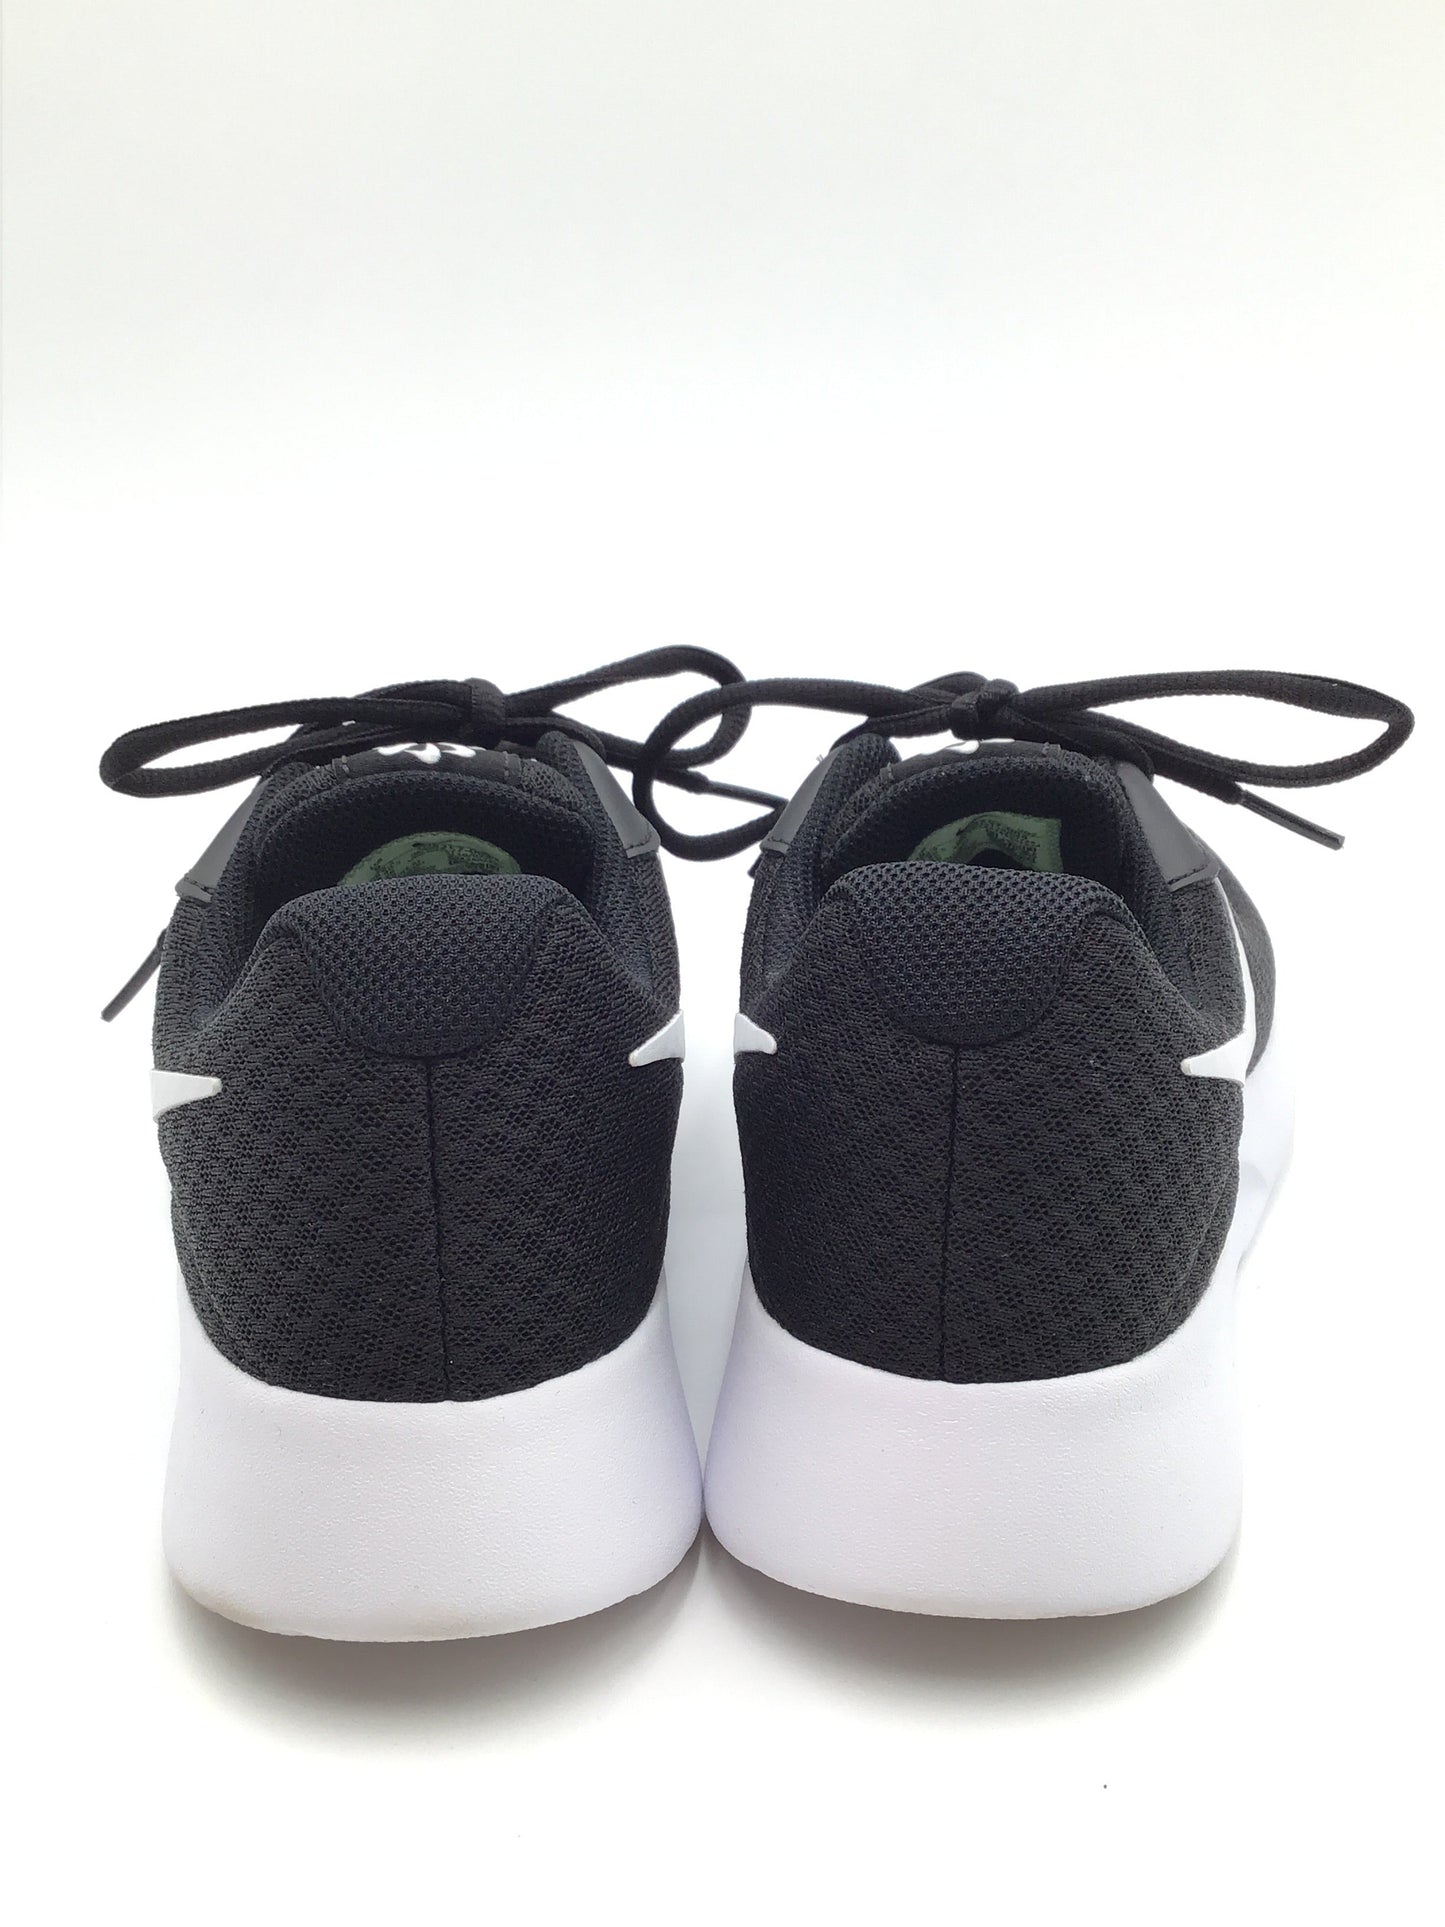 Black & White Shoes Athletic Nike, Size 9